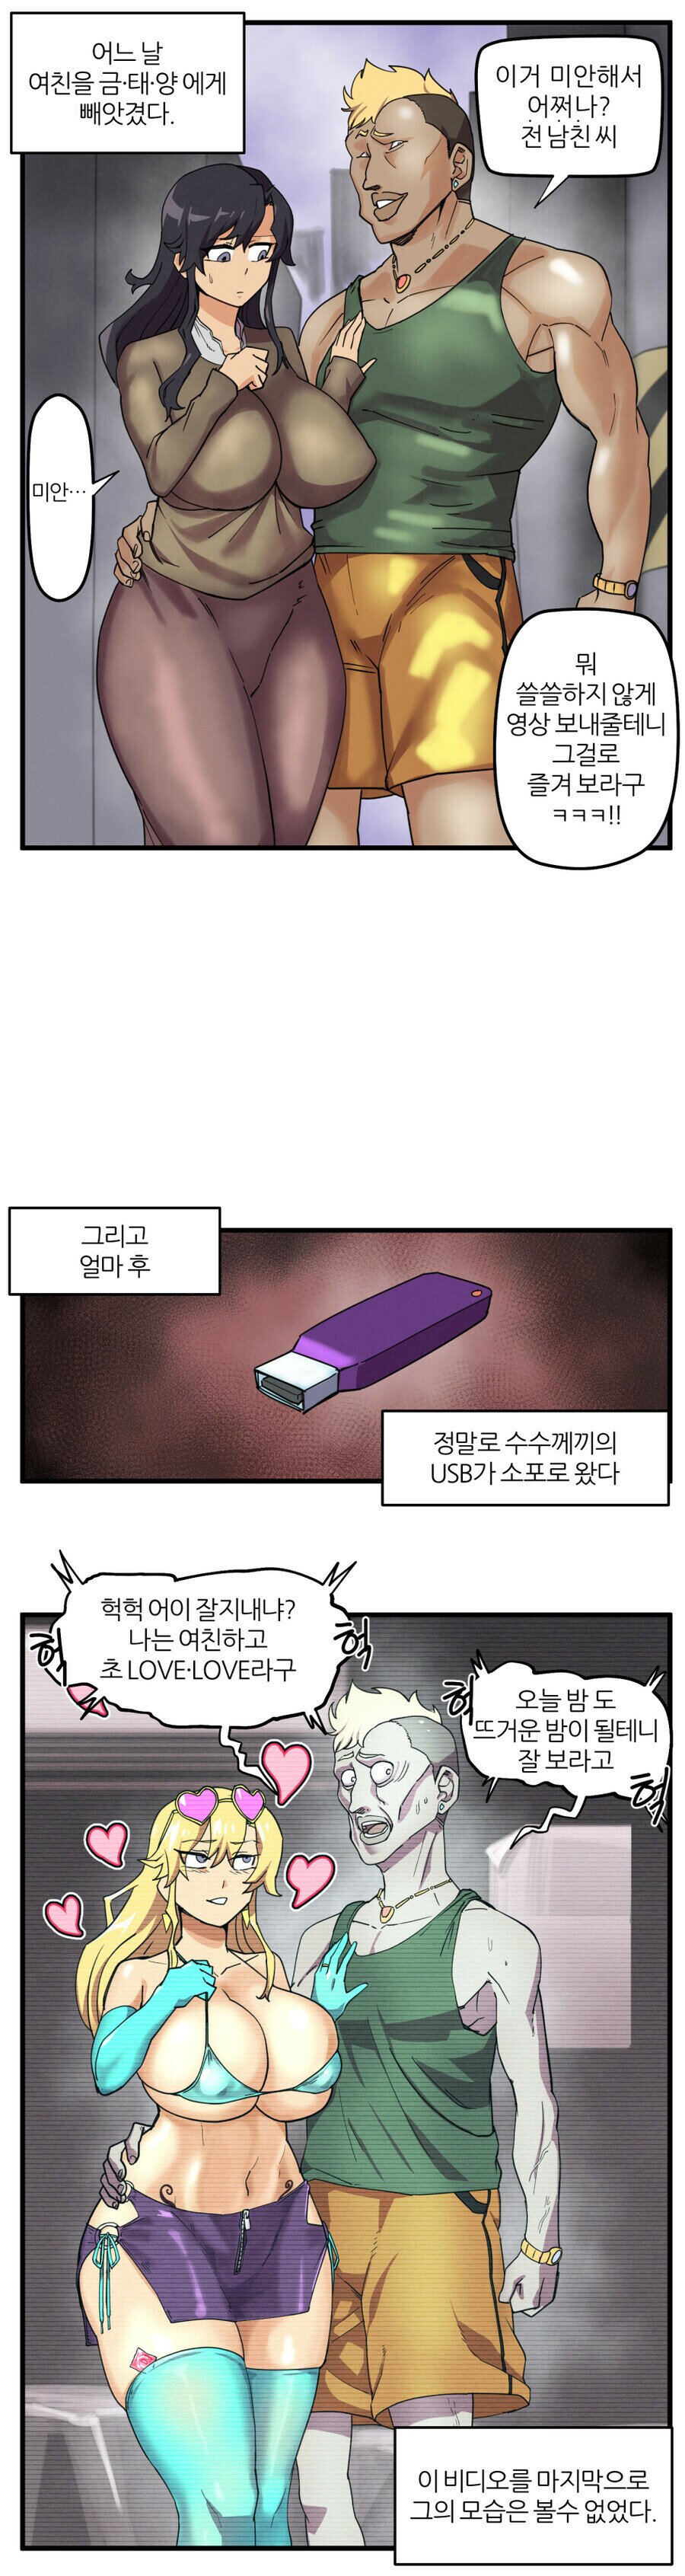 ㅇㅎ)금태양의 USB